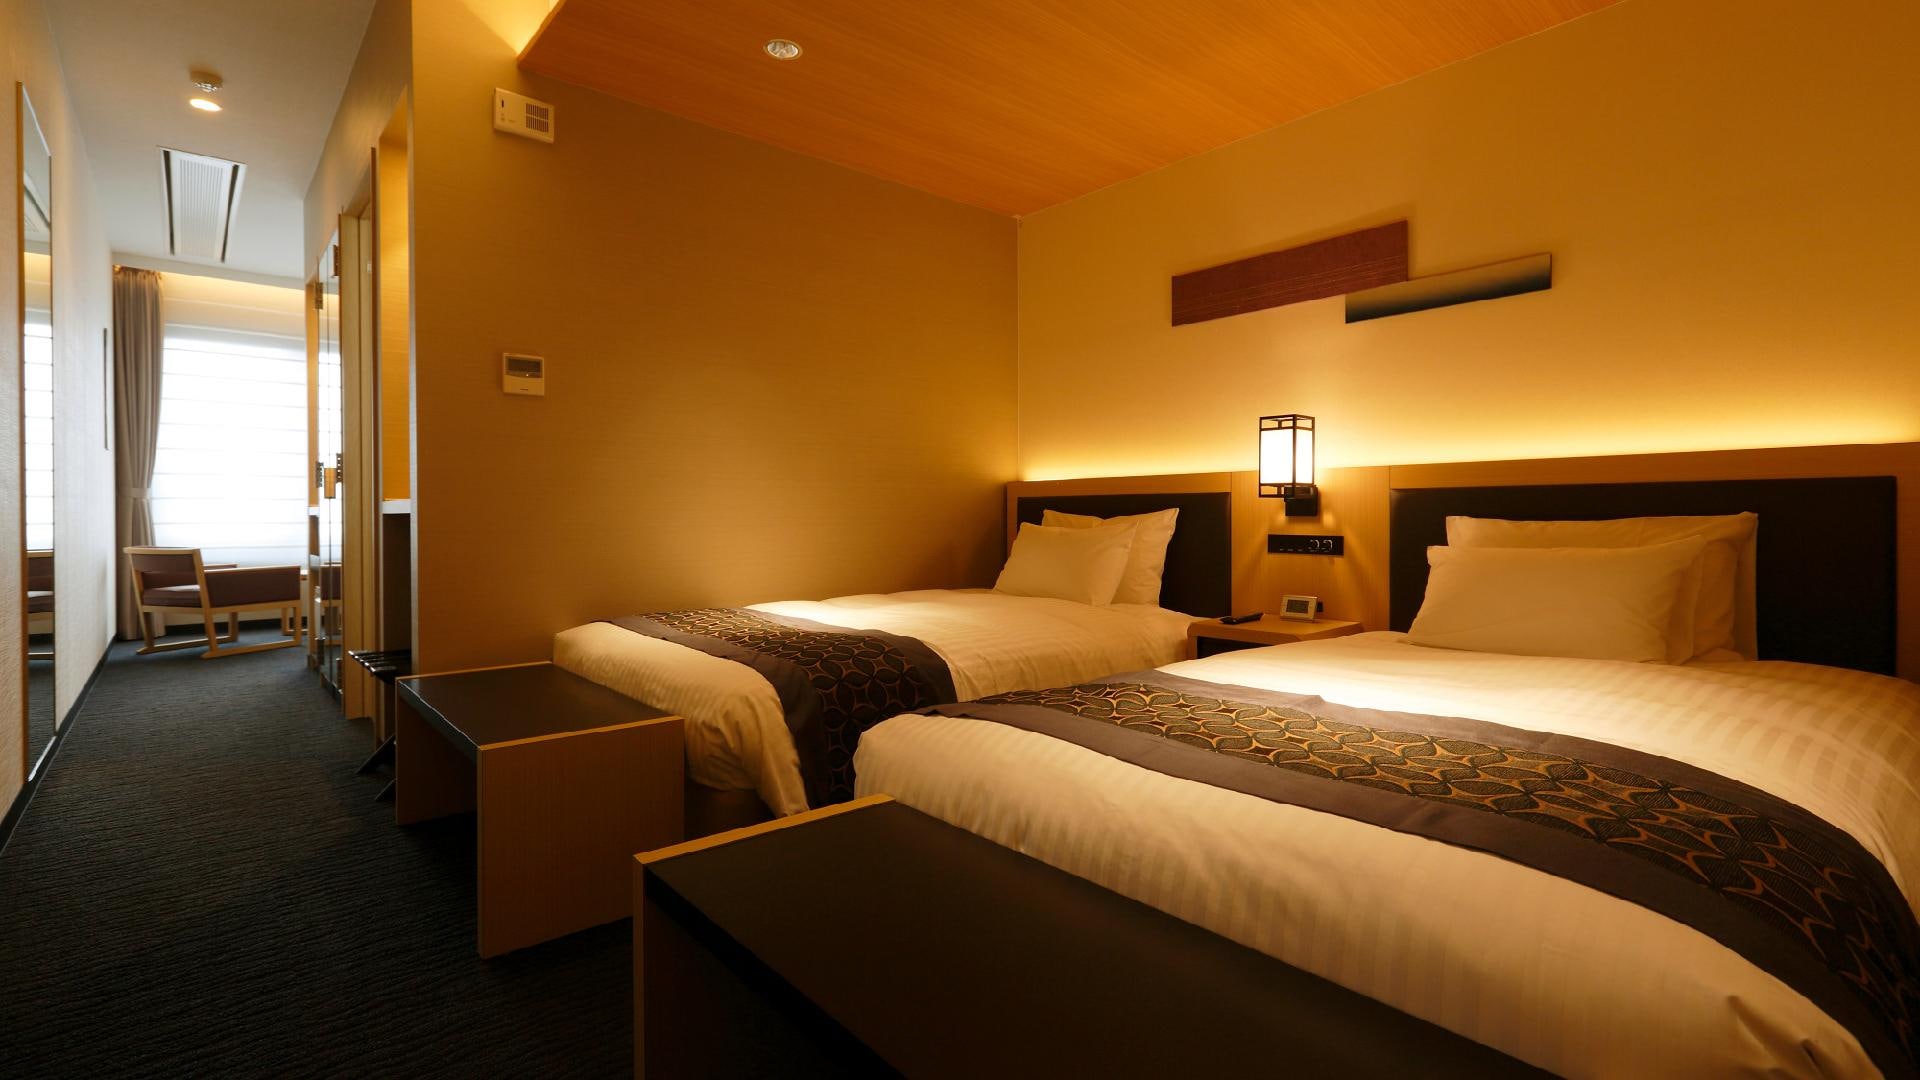 Kamar bergaya Barat dengan ukuran 32㎡ dan bergaya Jepang modern. Standar terpisah dengan ruang tamu dan kamar tidur terpisah.